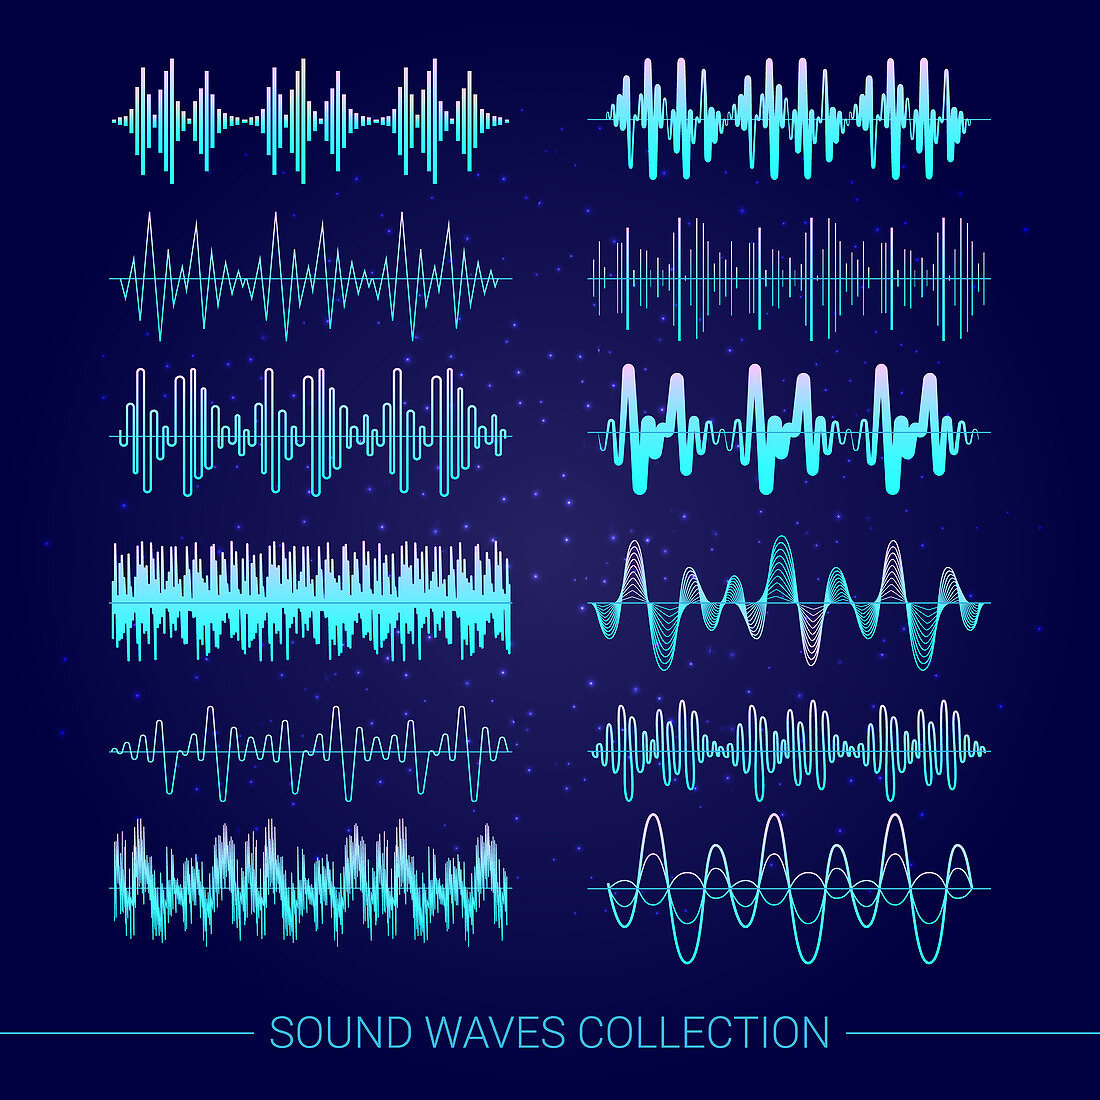 Sound waves, illustration